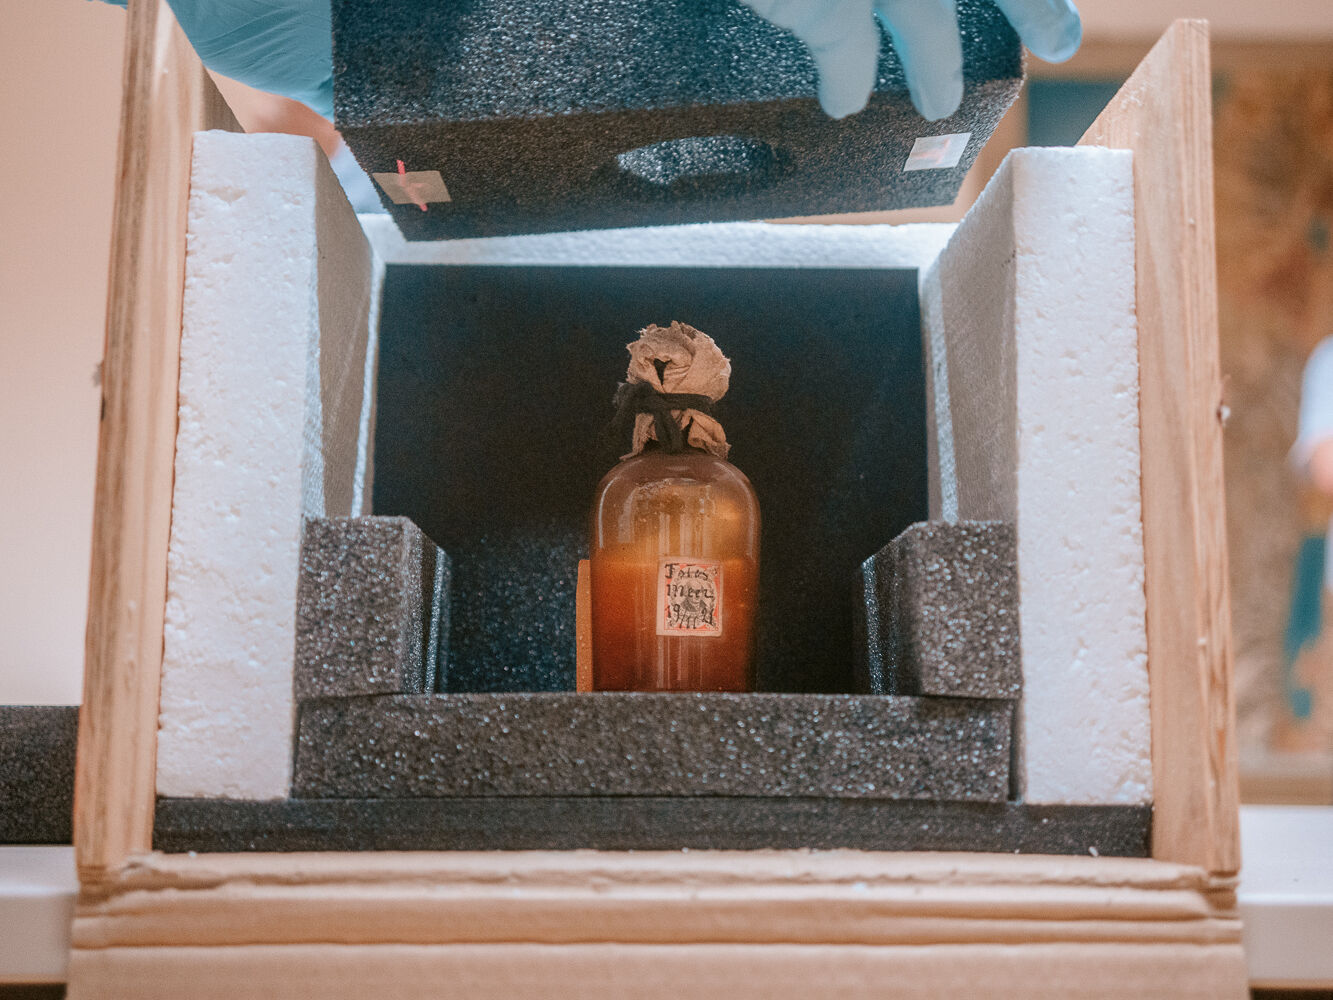 Dalmans Wasserprobe aus dem Toten Meer wird in eine klimastabile Transportbox gepackt. – Foto: Magnus Schult